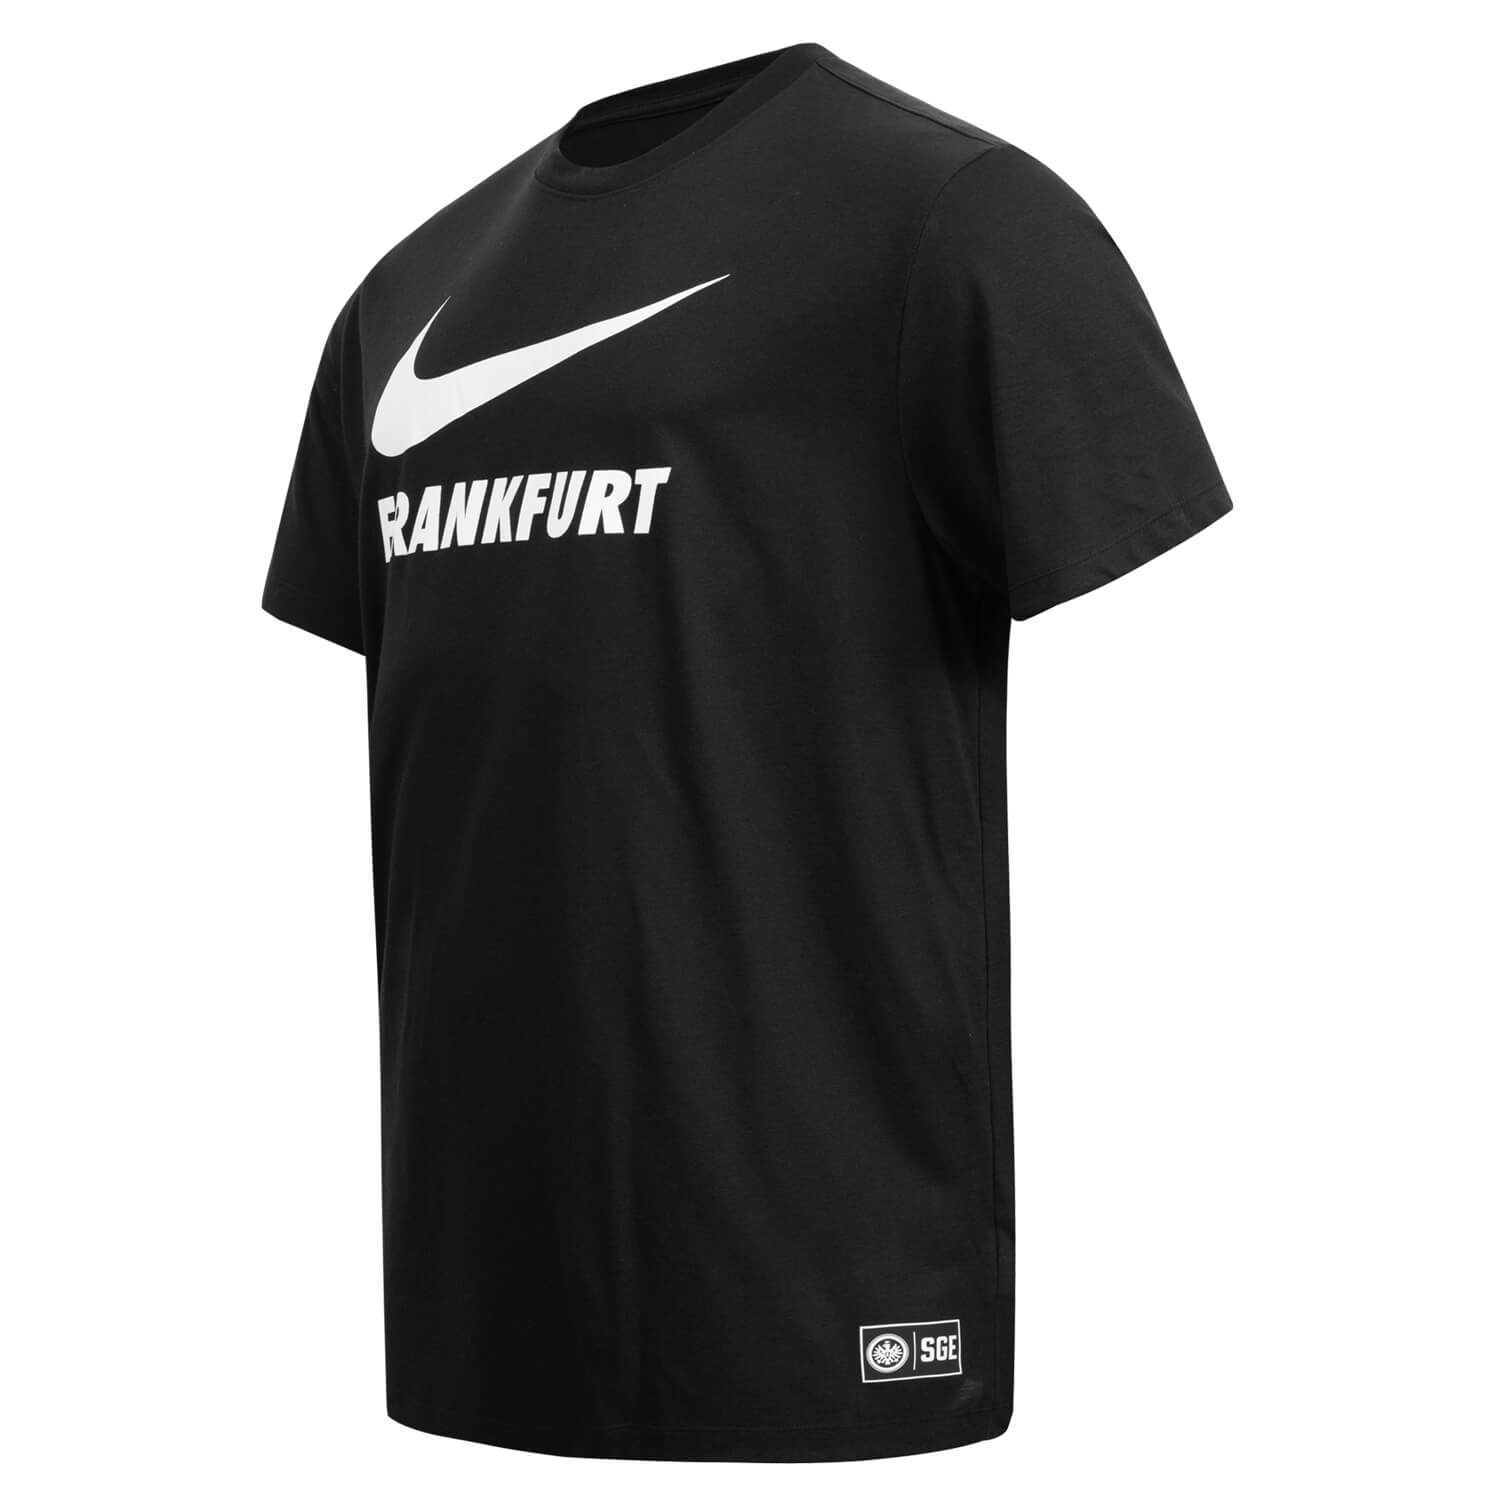 Bild 3: Nike T-Shirt Swoosh schwarz